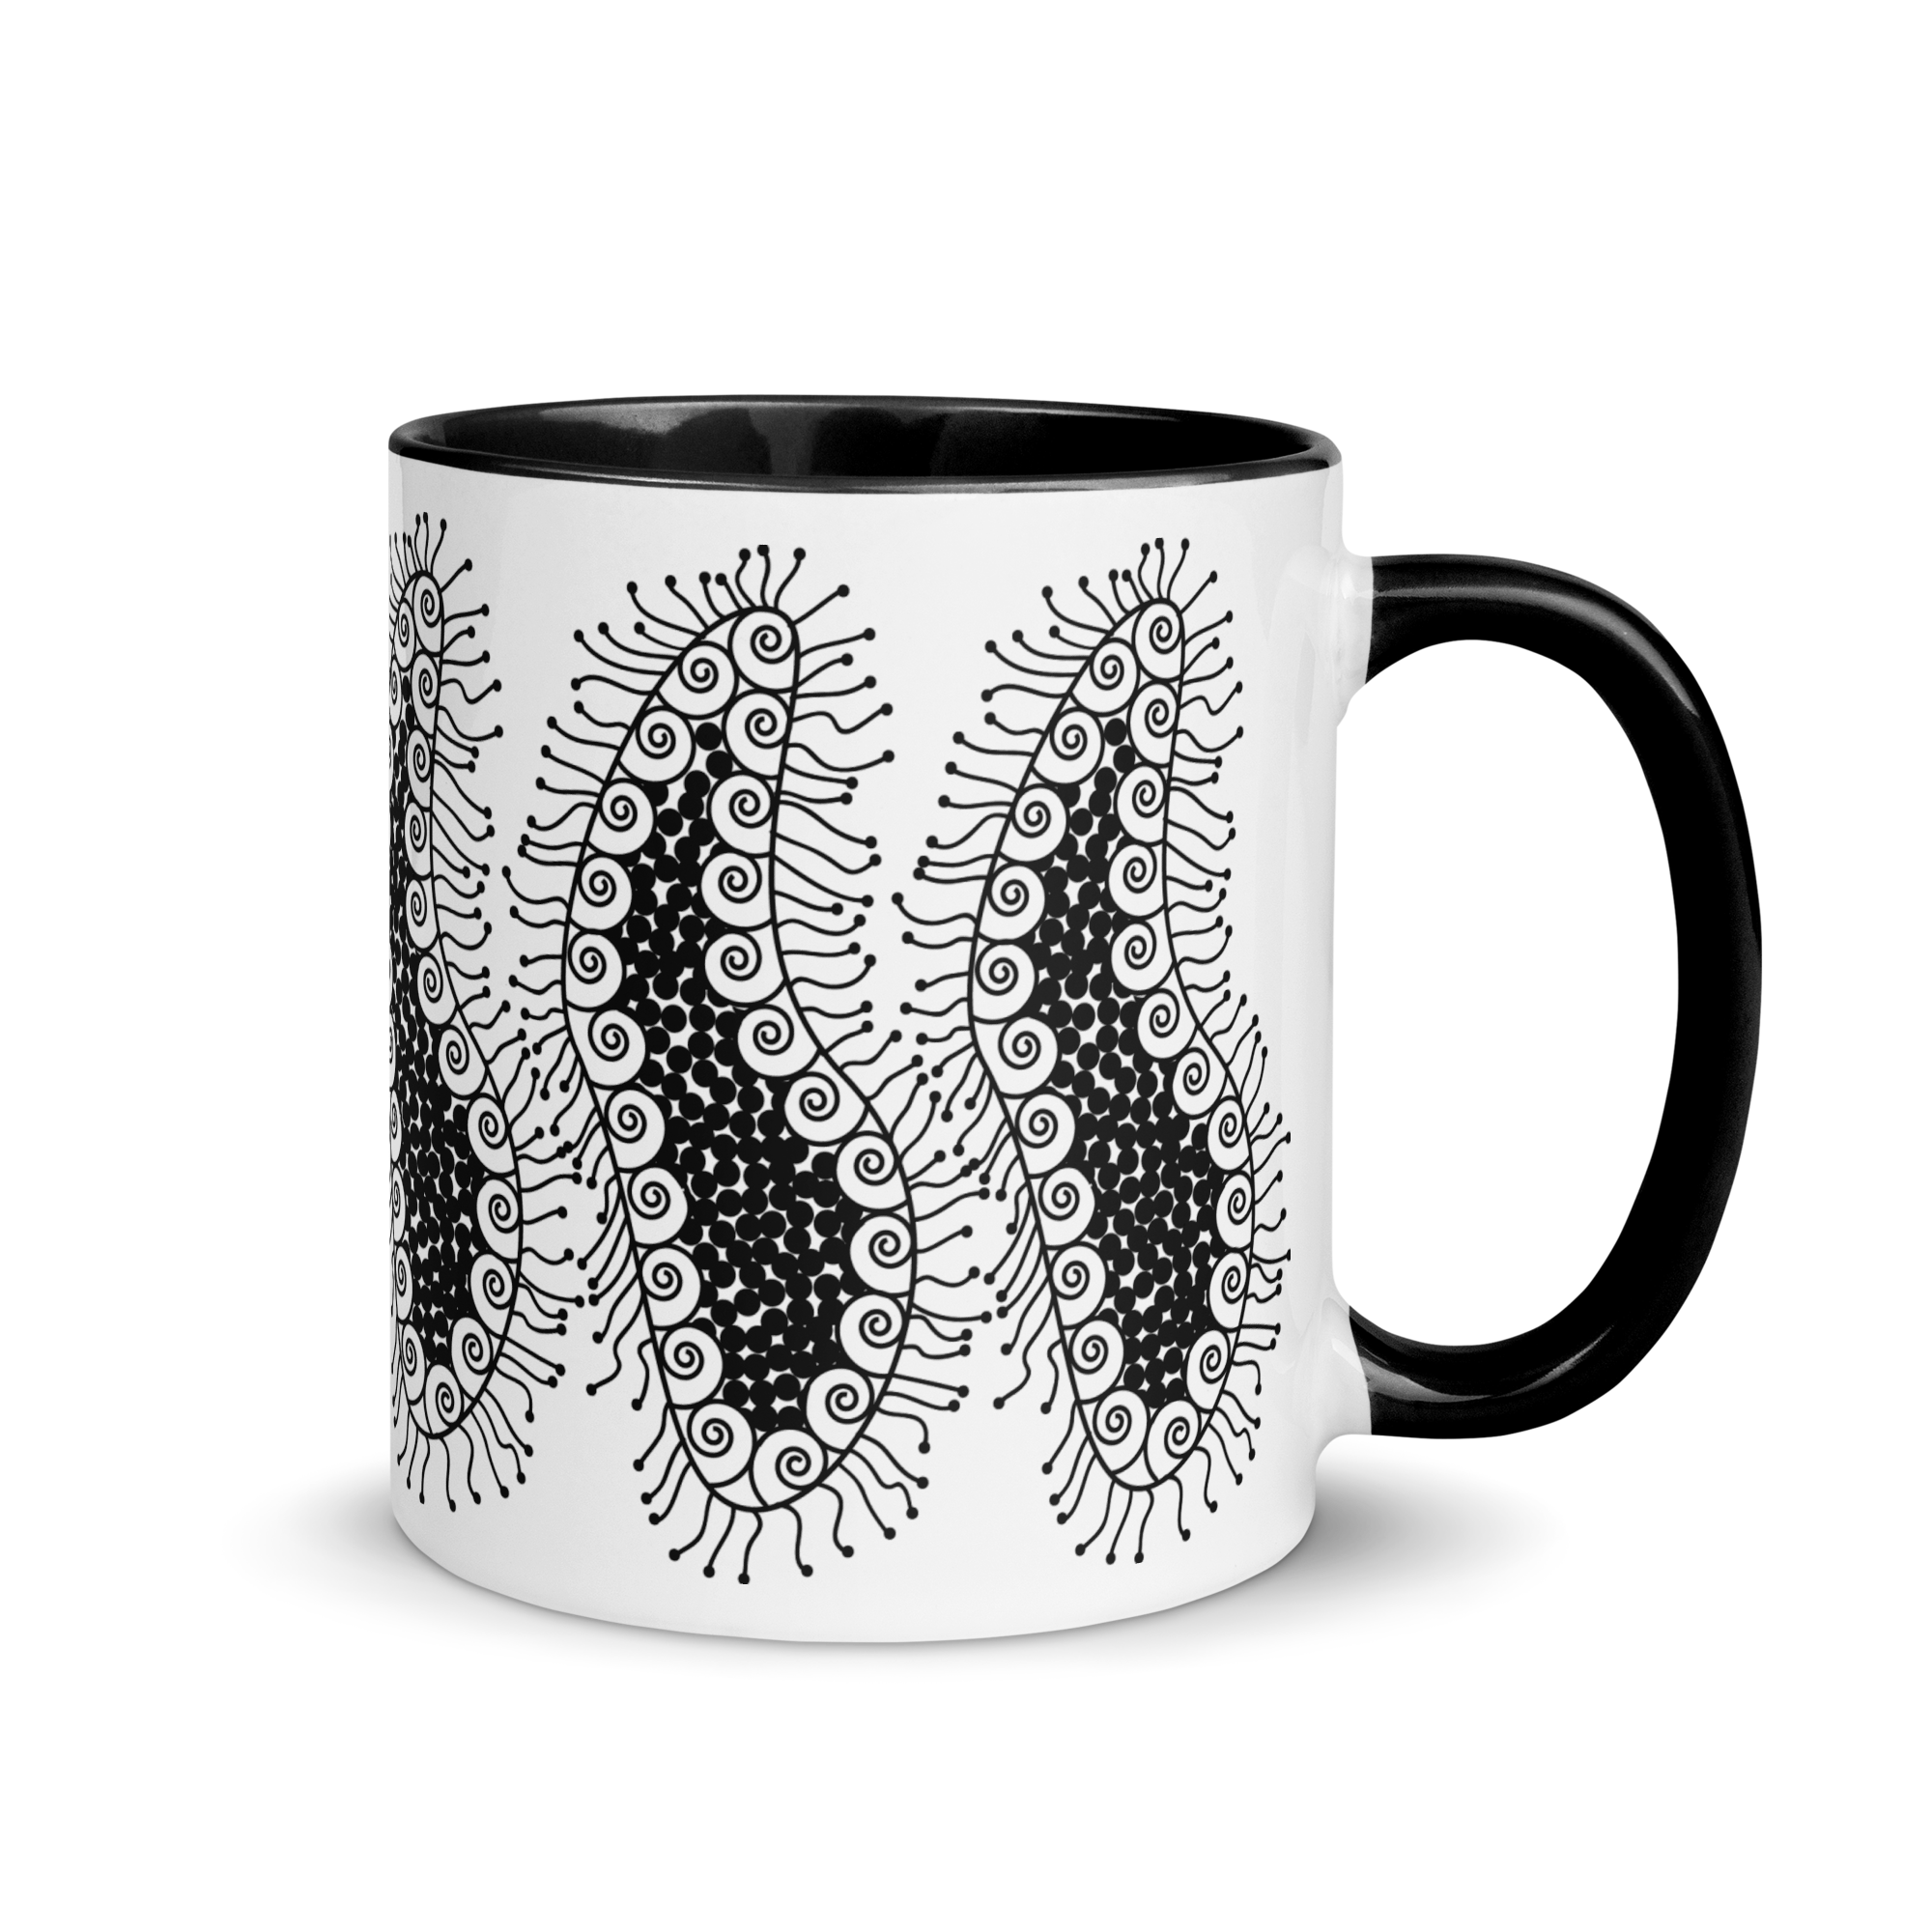 white-ceramic-mug-with-color-inside-black-11-oz-right-65e46e09bba46.png